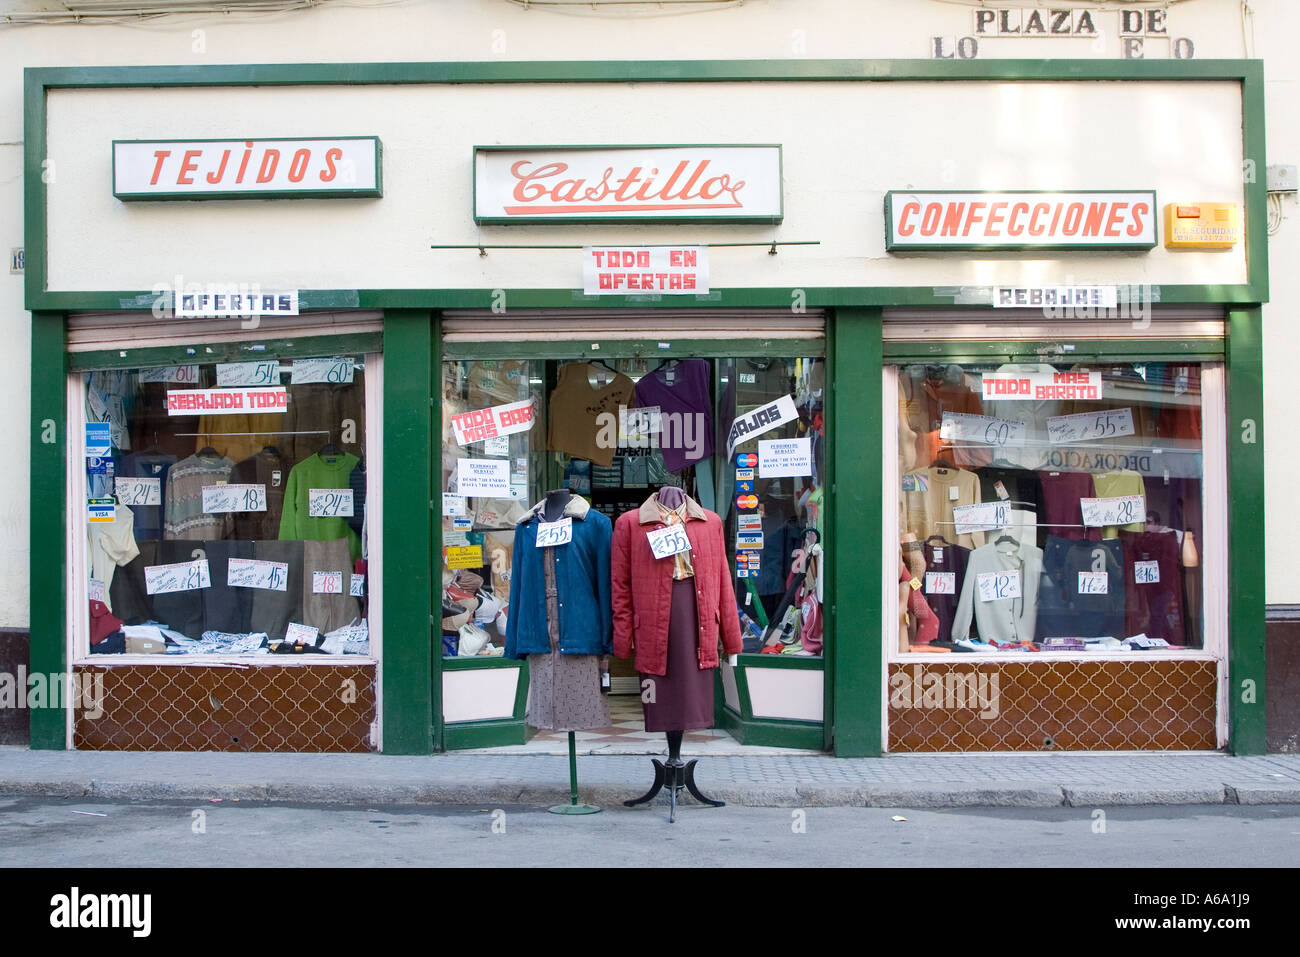 Tradizionale negozio di merceria a Siviglia centro città, Spagna Foto Stock